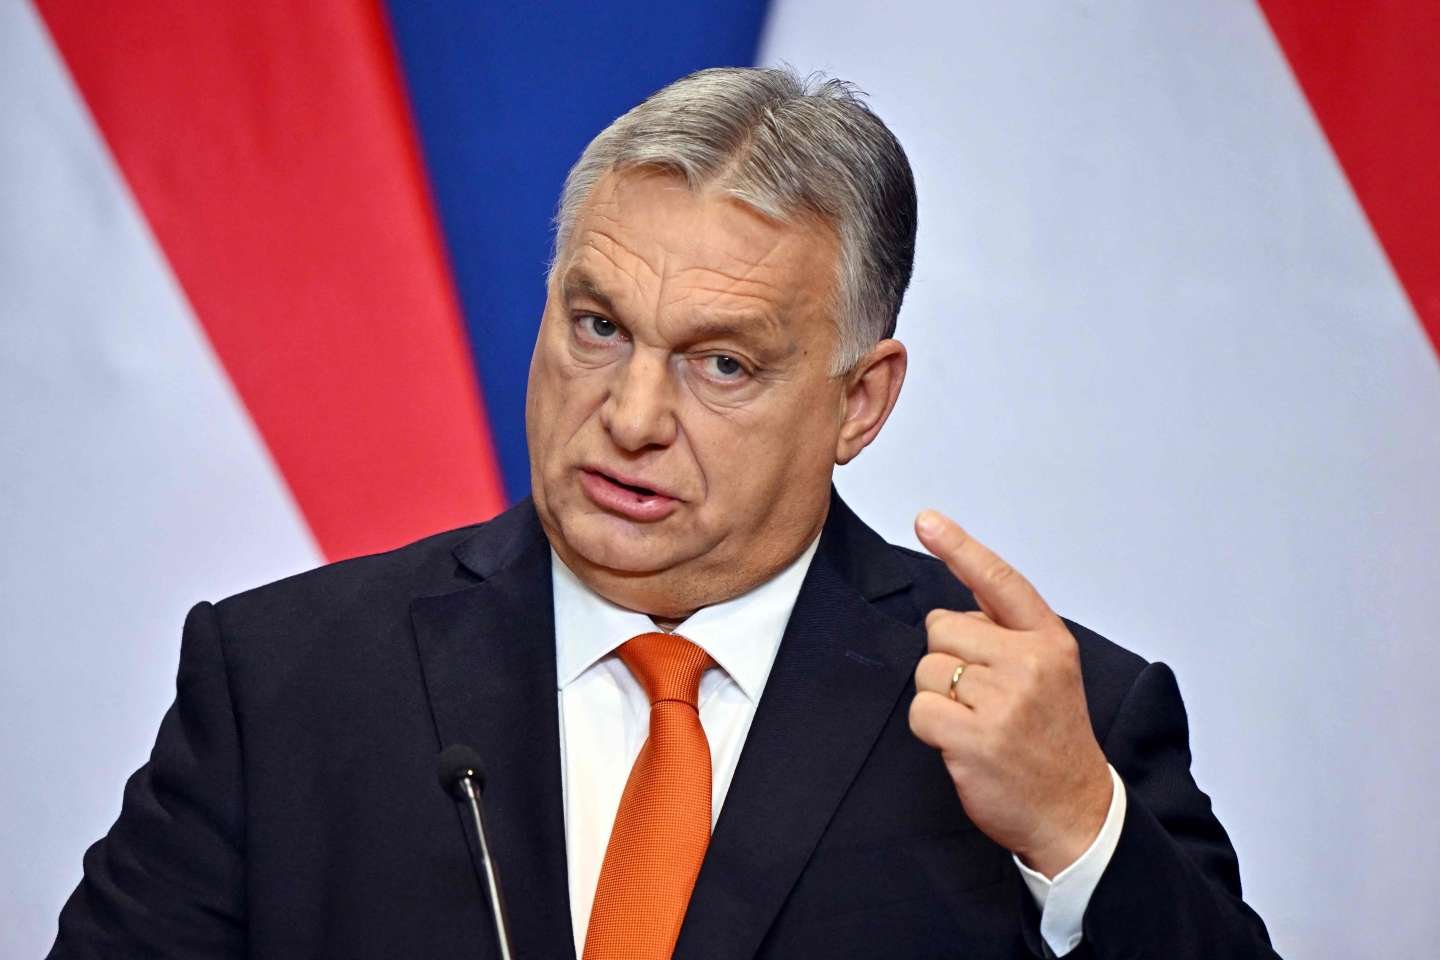  Viktor Orban, premierul Ungariei, dat în judecată la Curtea de Apel Iaşi